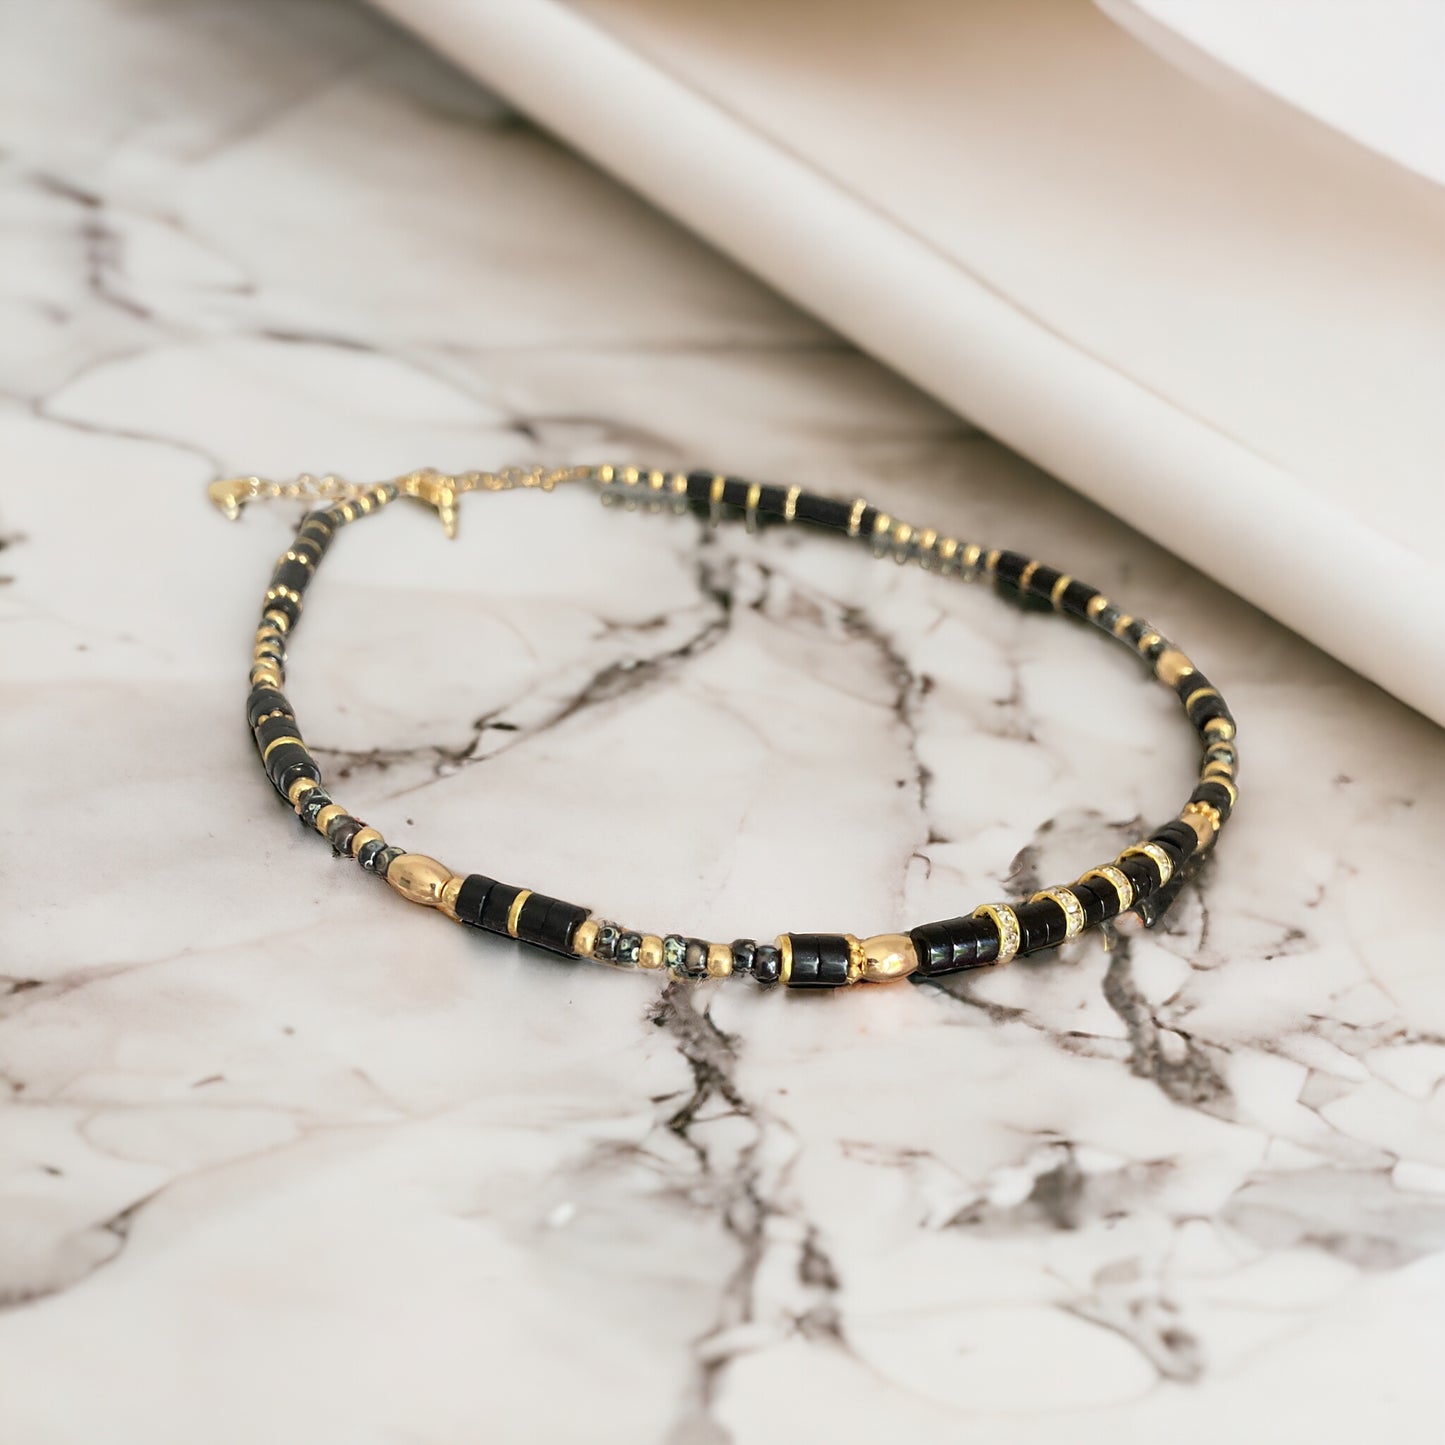 Collier précieux : Calixe , collier onyx noir et perles du Japon , pierres semi précieuses et acier inoxydable